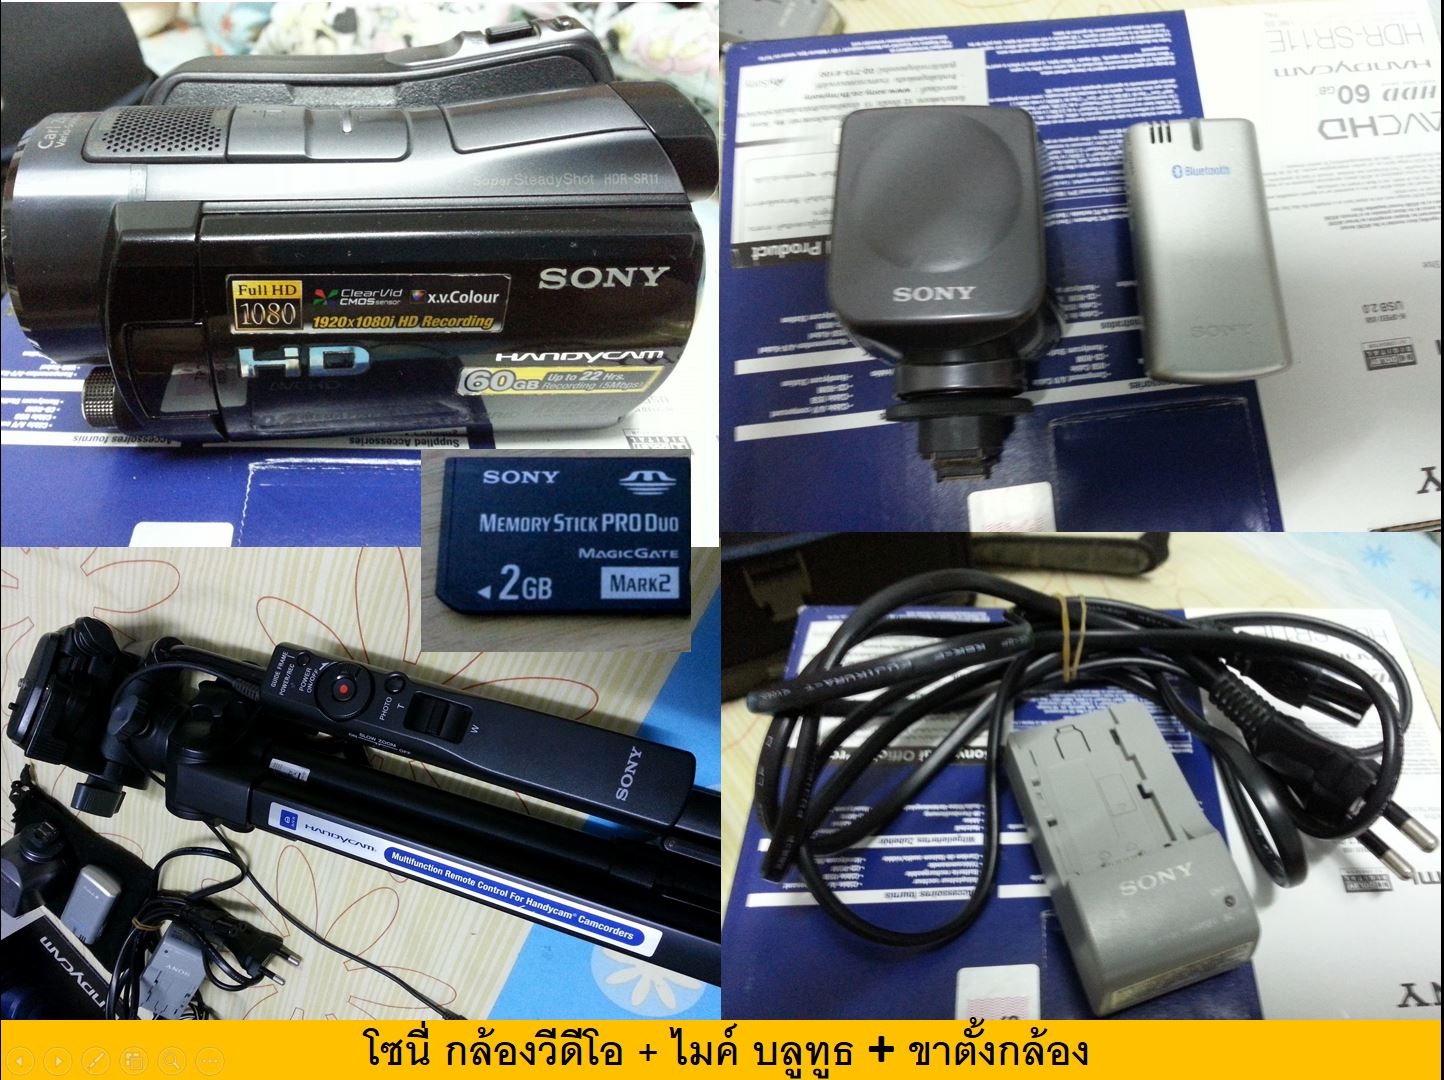 โซนี่ กล้องวิดีโอ Sony handycam Full HD และ ชุดอุปกรณ์ ครบเครื่อง รูปที่ 1